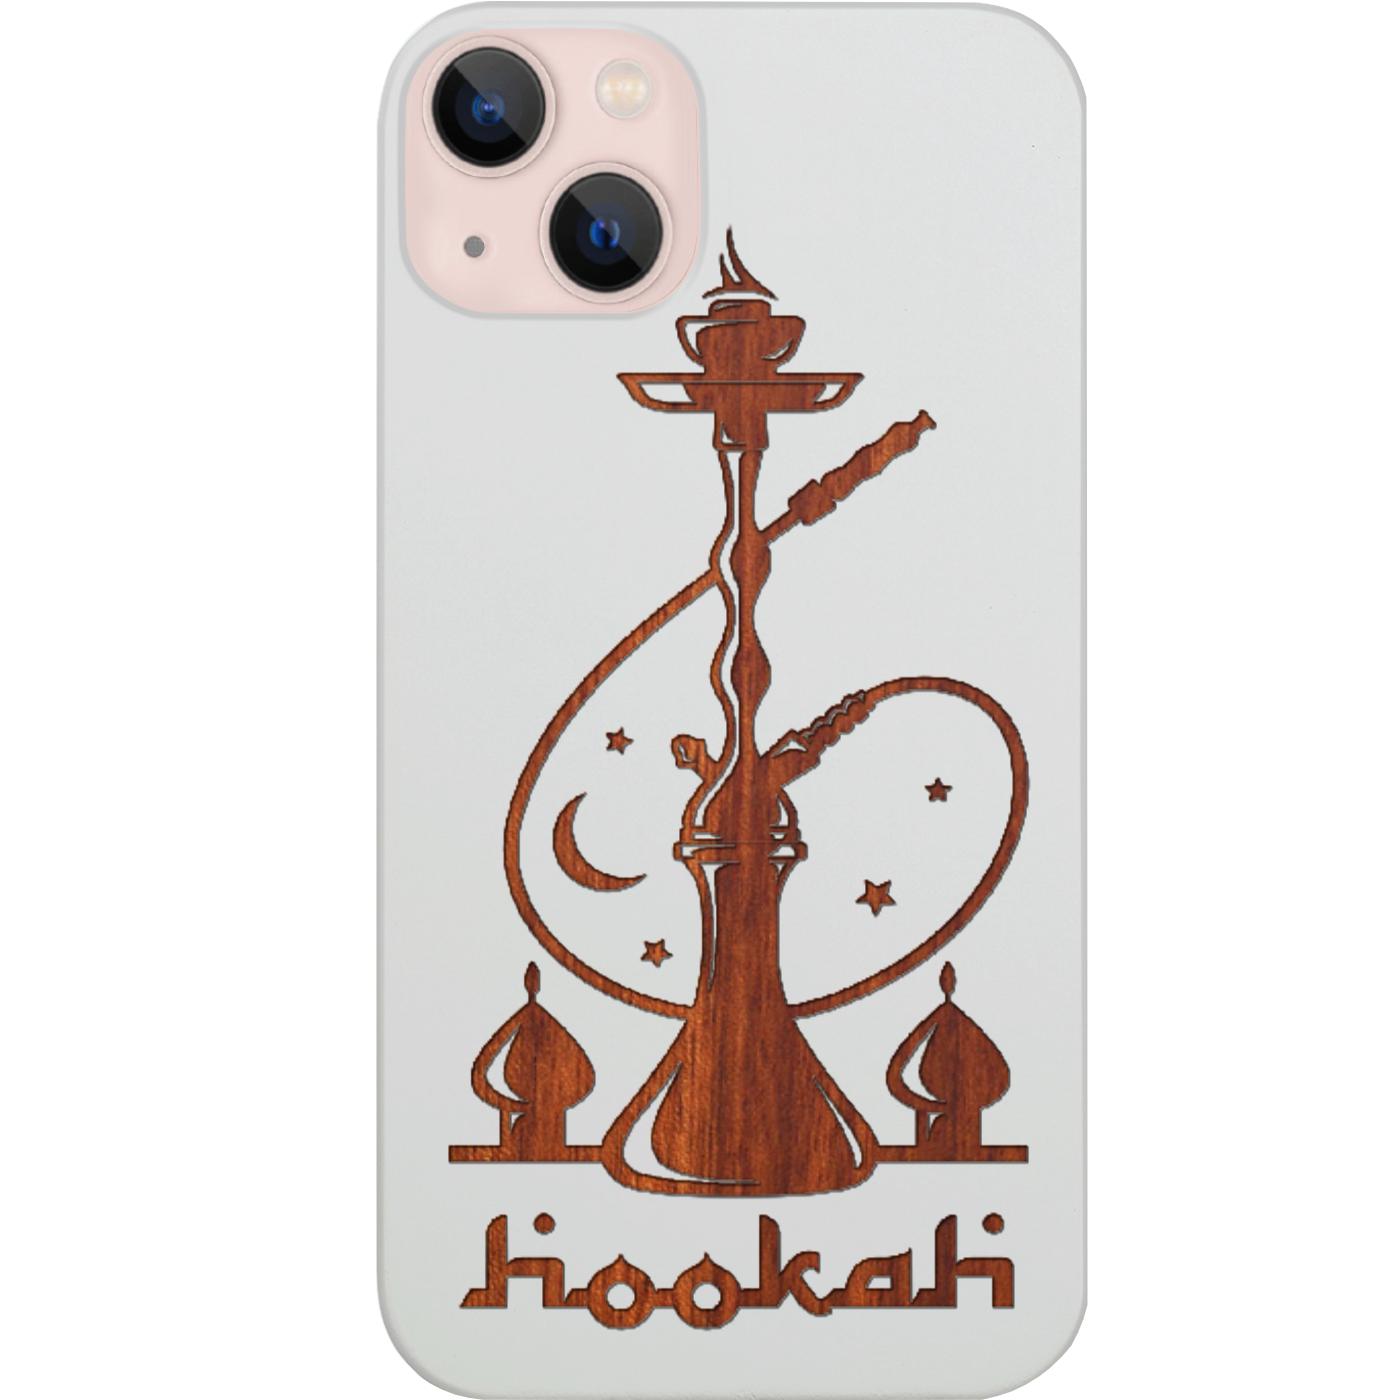 Hookah - Engraved Phone Case